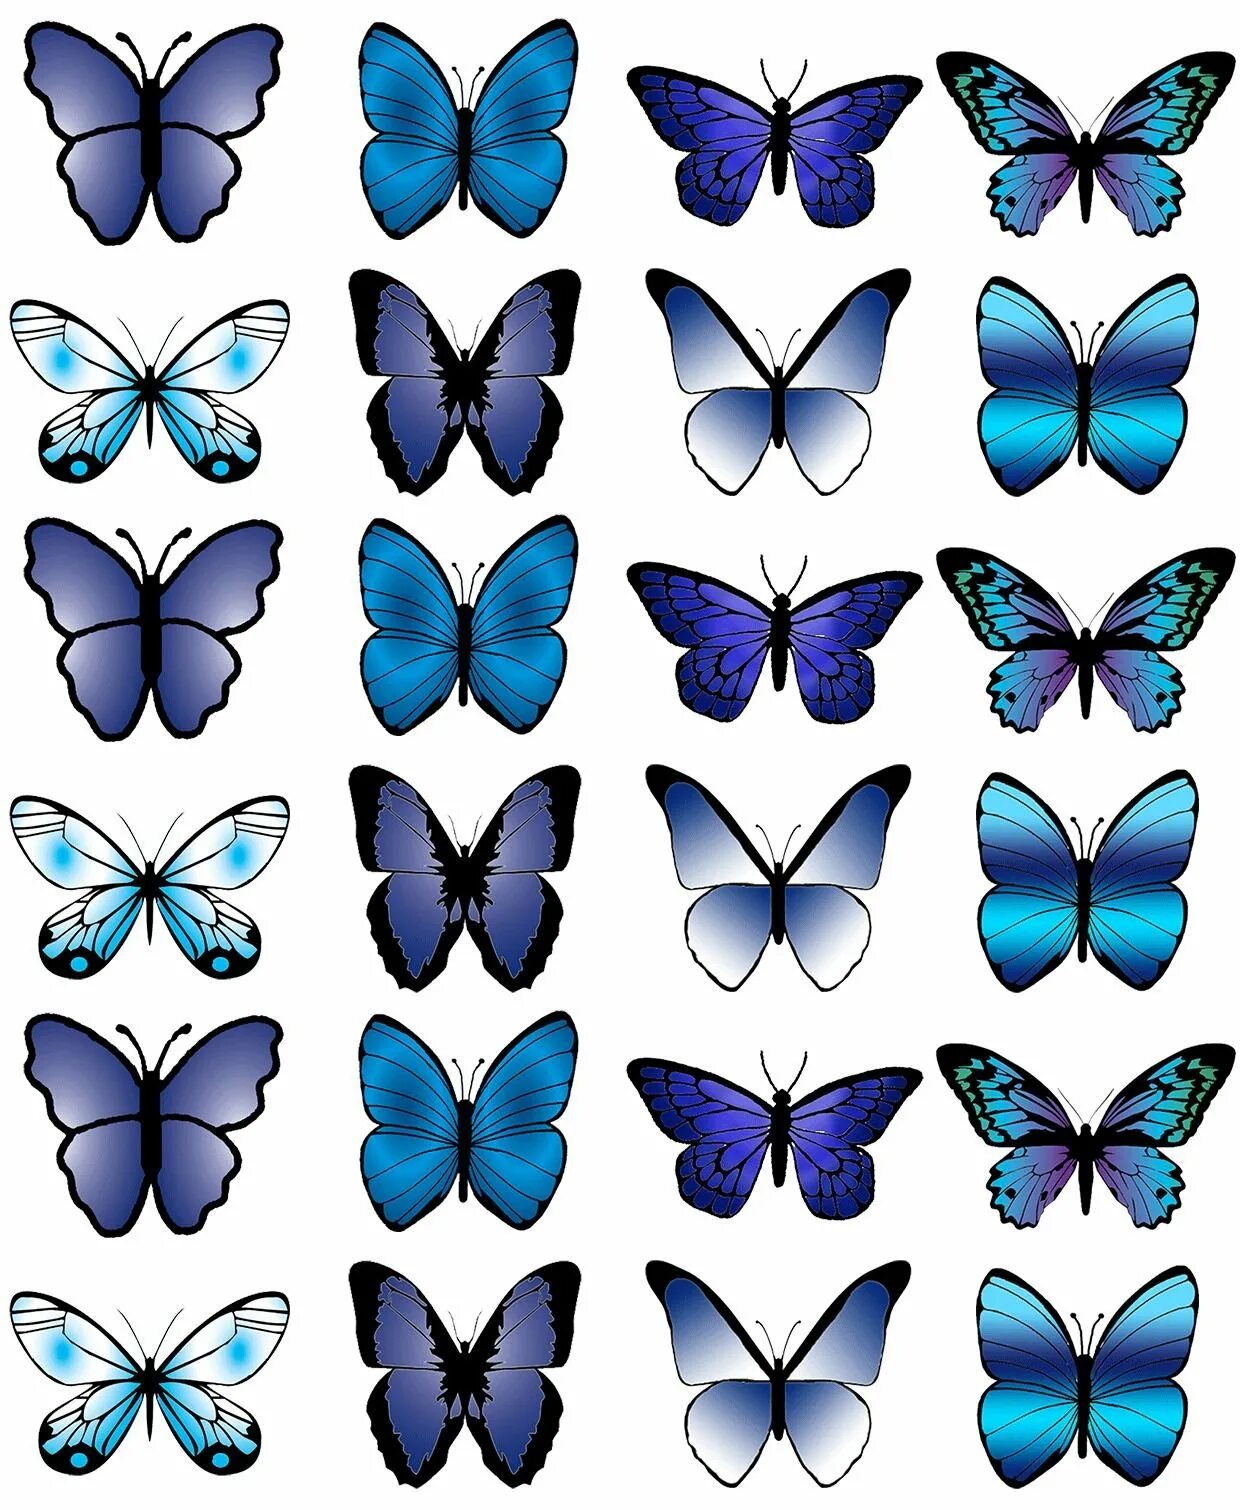 Синие картинки распечатать. Бабочки для печати. Торт «бабочки». Синие бабочки для печати. Голубые бабочки для печати.